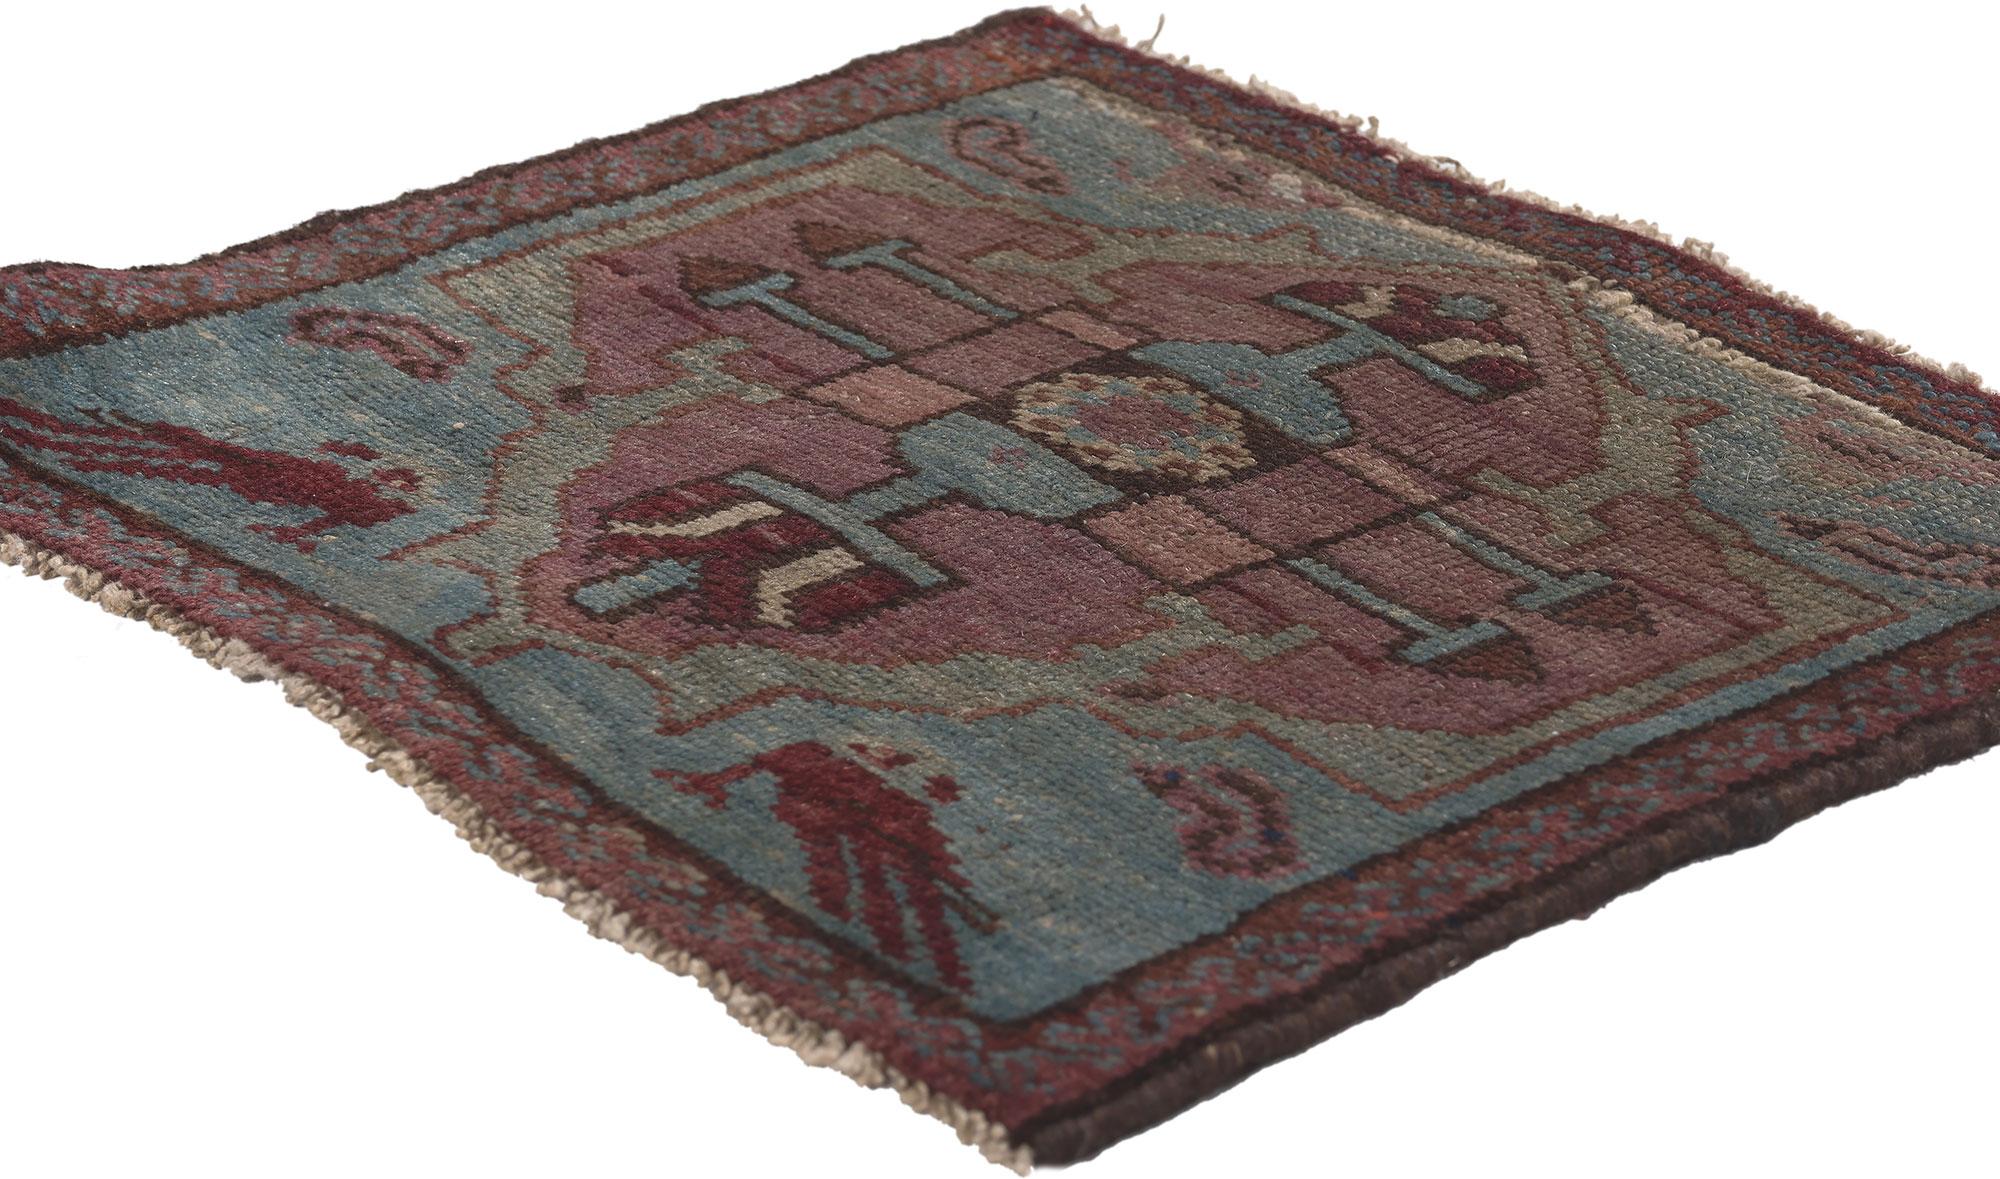 Paire de petits tapis anciens persans Malayer.
Le style de la Renaissance et le charme envoûtant s'entrechoquent dans cette paire de tapis anciens en laine persane Malayer noués à la main. Le design roman et la palette de couleurs de la Renaissance